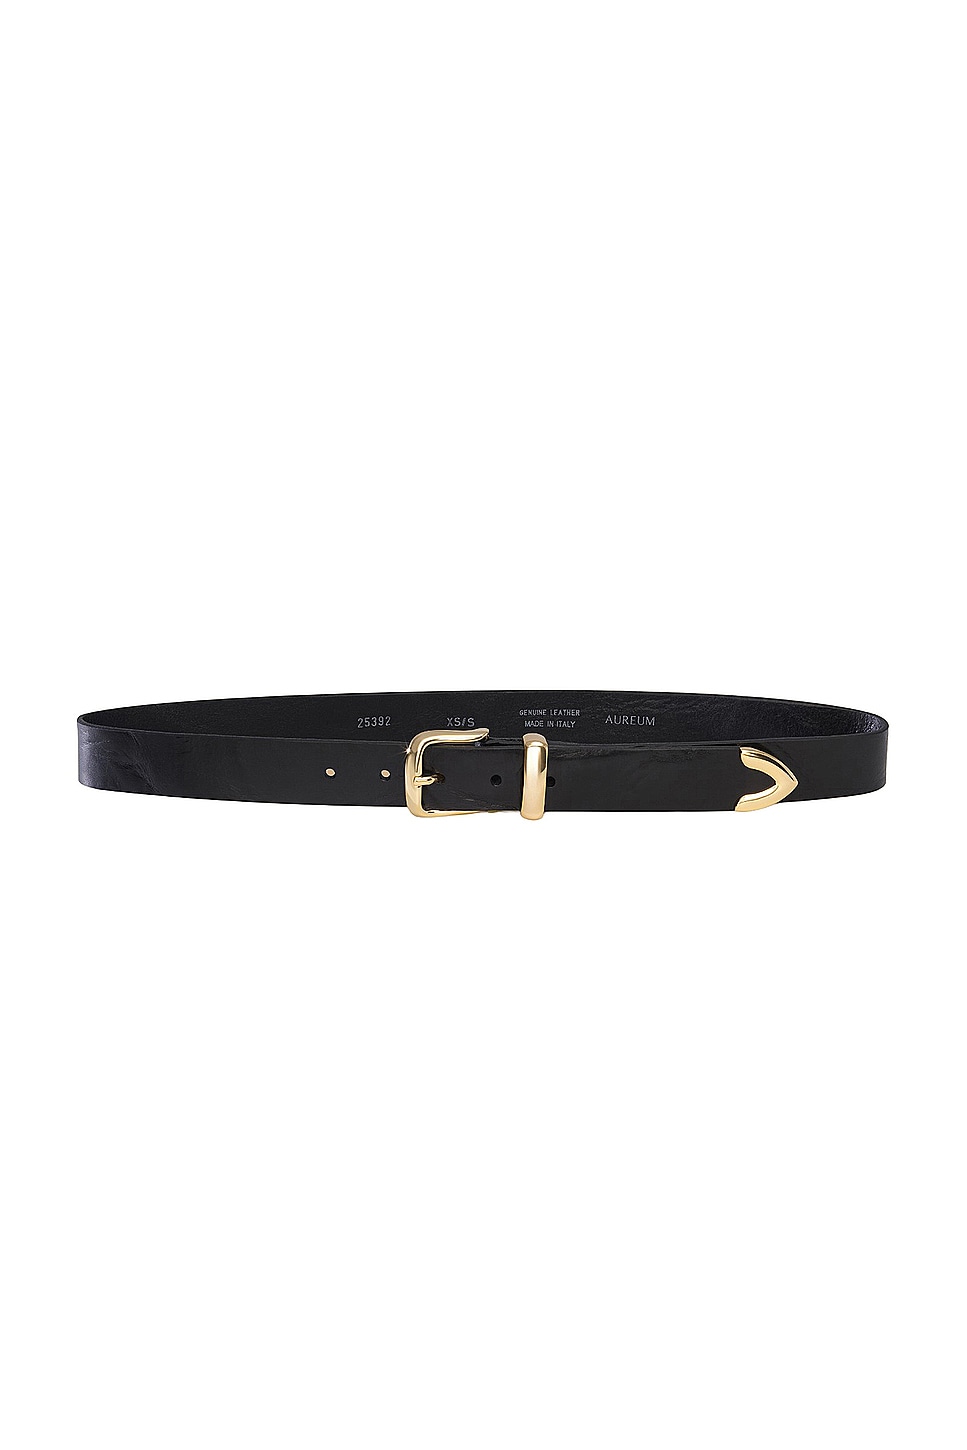 Gold Tip Belt in Black